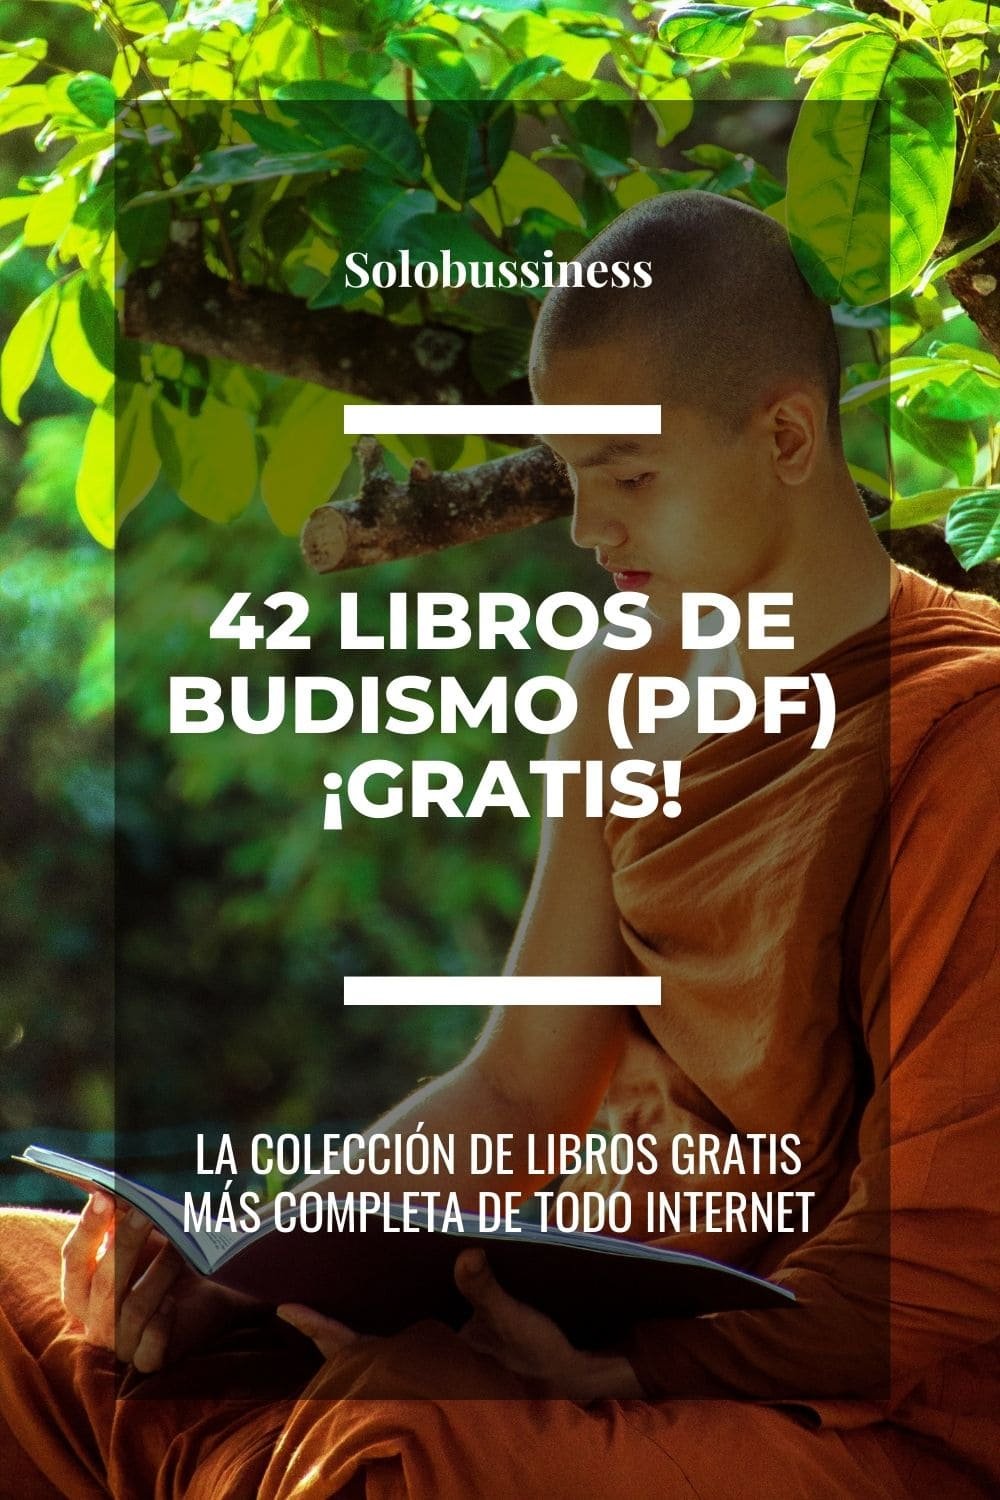 Libros de Budismo en formato pdf